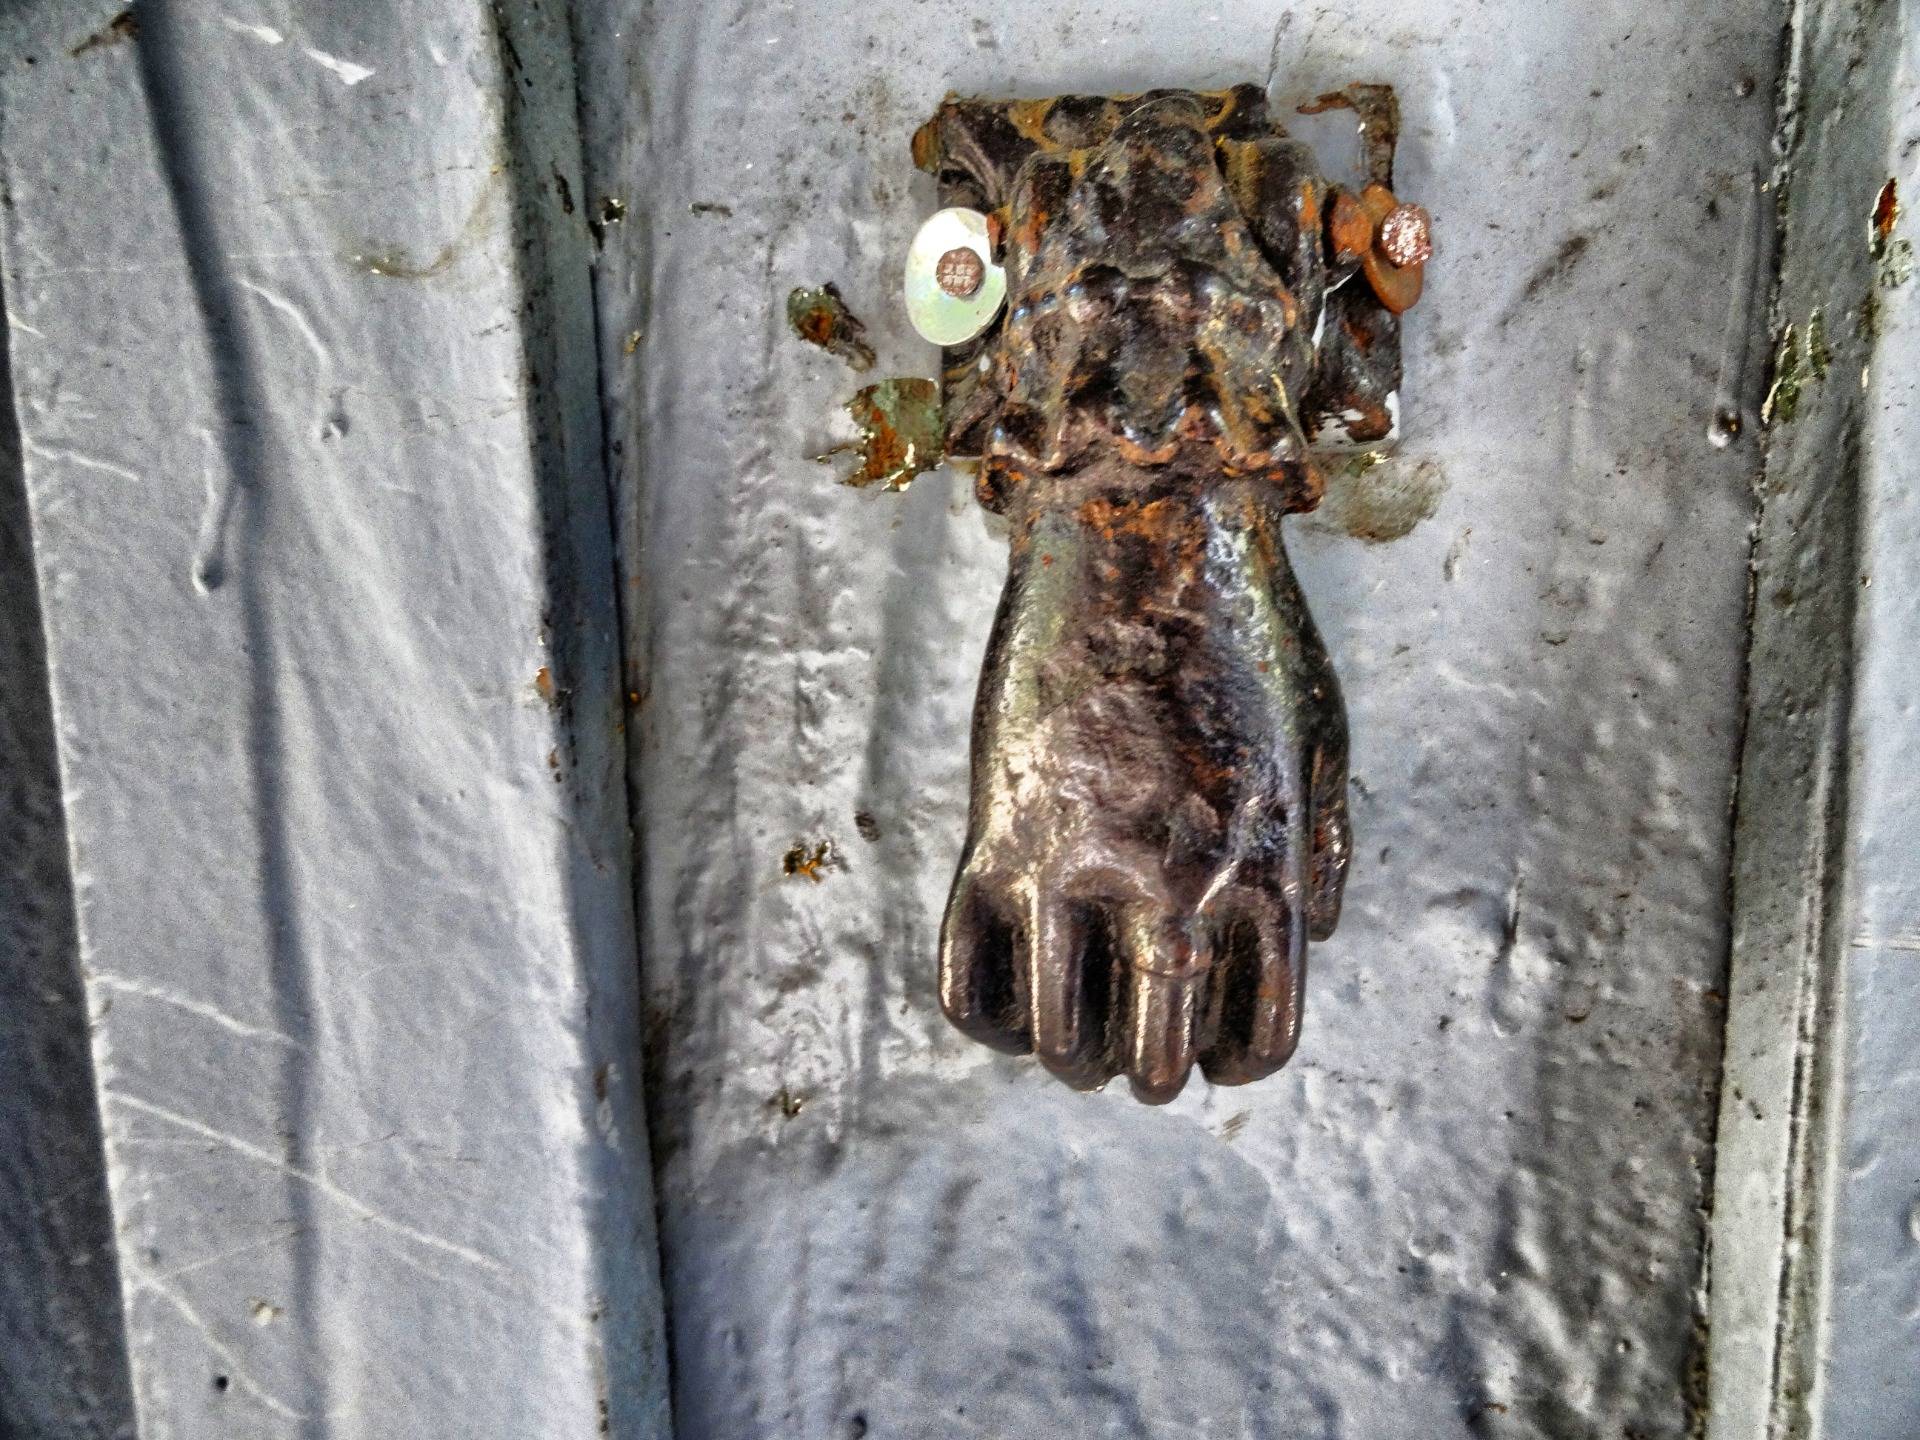 On the door of an old school